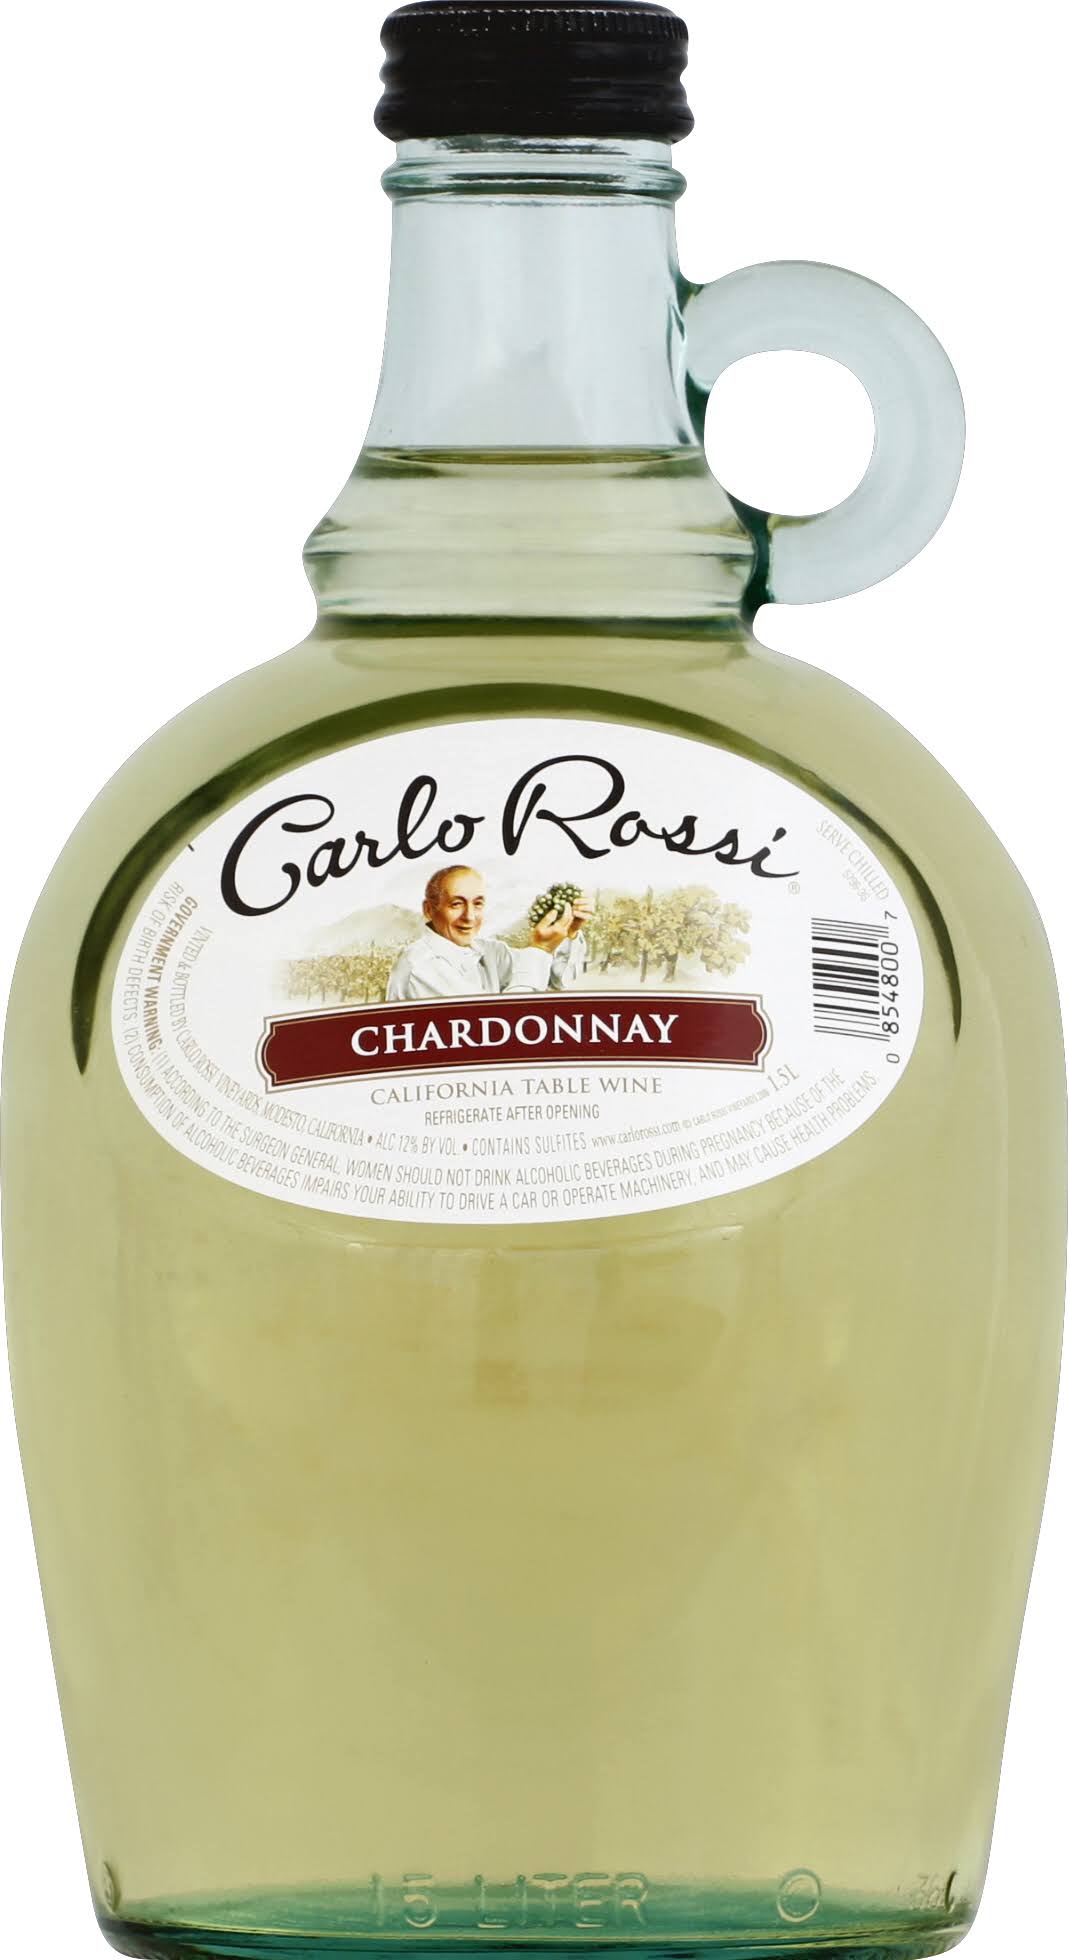 Carlo Rossi Chardonnay, California Table Wine - 1.5 l